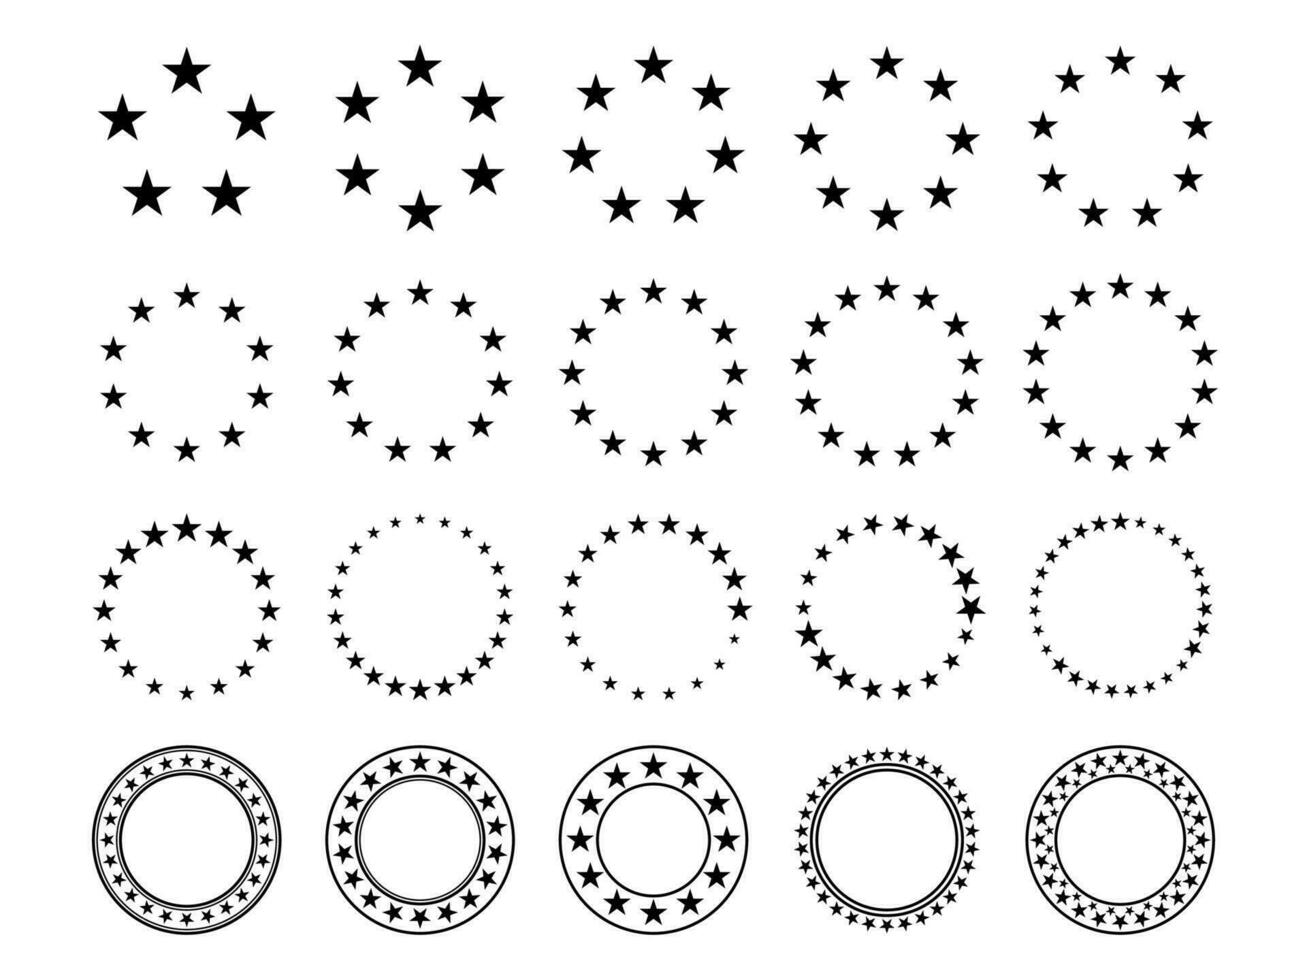 ster cirkel. ronde kaders met sterren voor insigne, embleem en zegel. circulaire beoordeling pictogrammen met favoriet vijf wees silhouet ster, prijs vector teken reeks